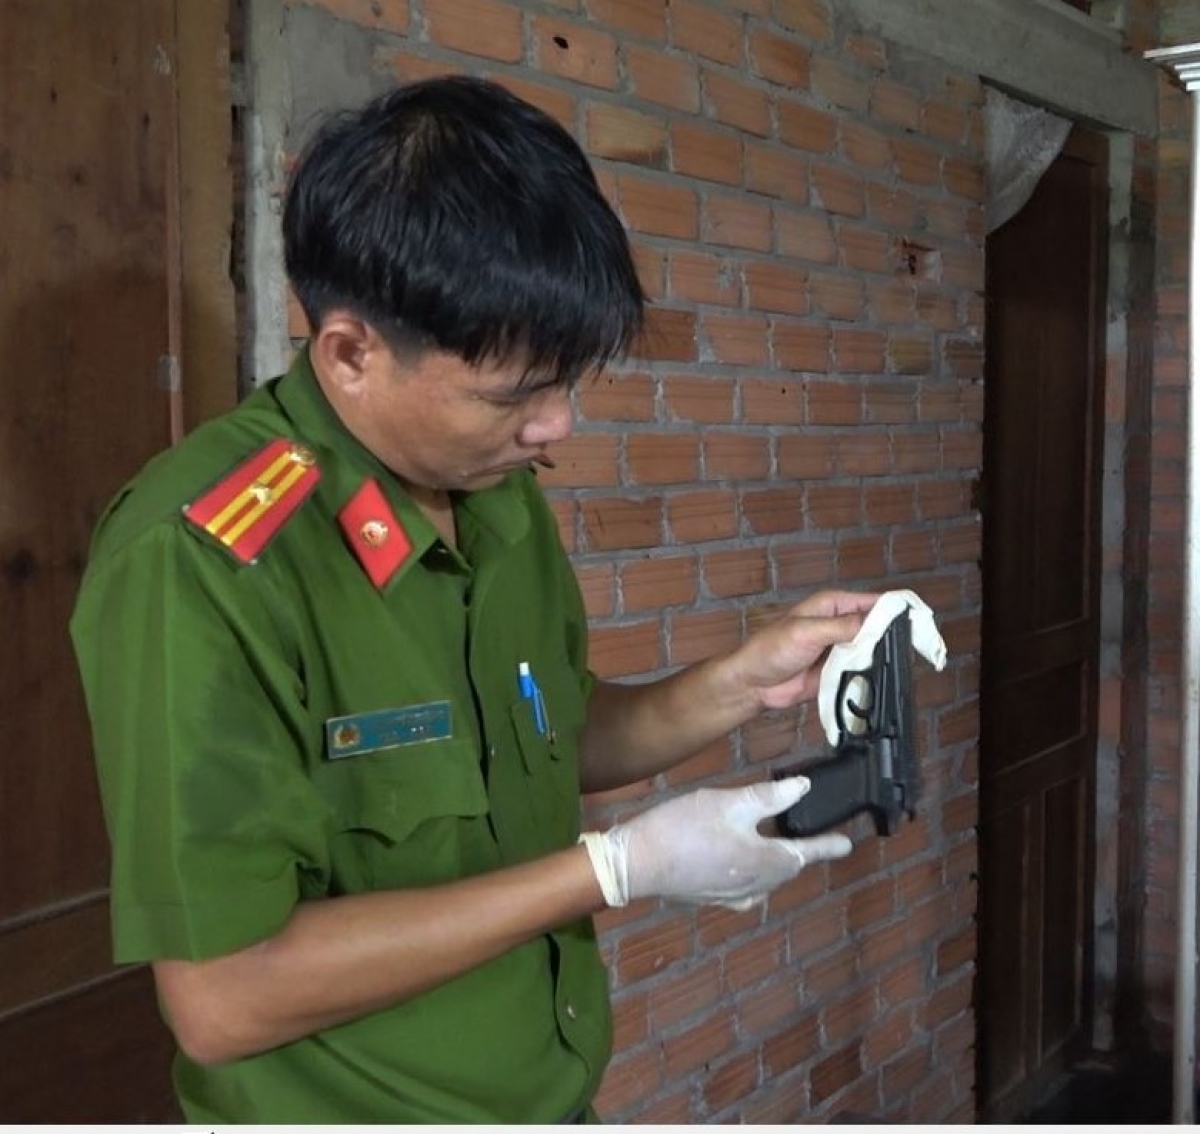 Khẩu súng cơ quan công an phát hiện tại nơi ở của Nguyễn Văn Phương.